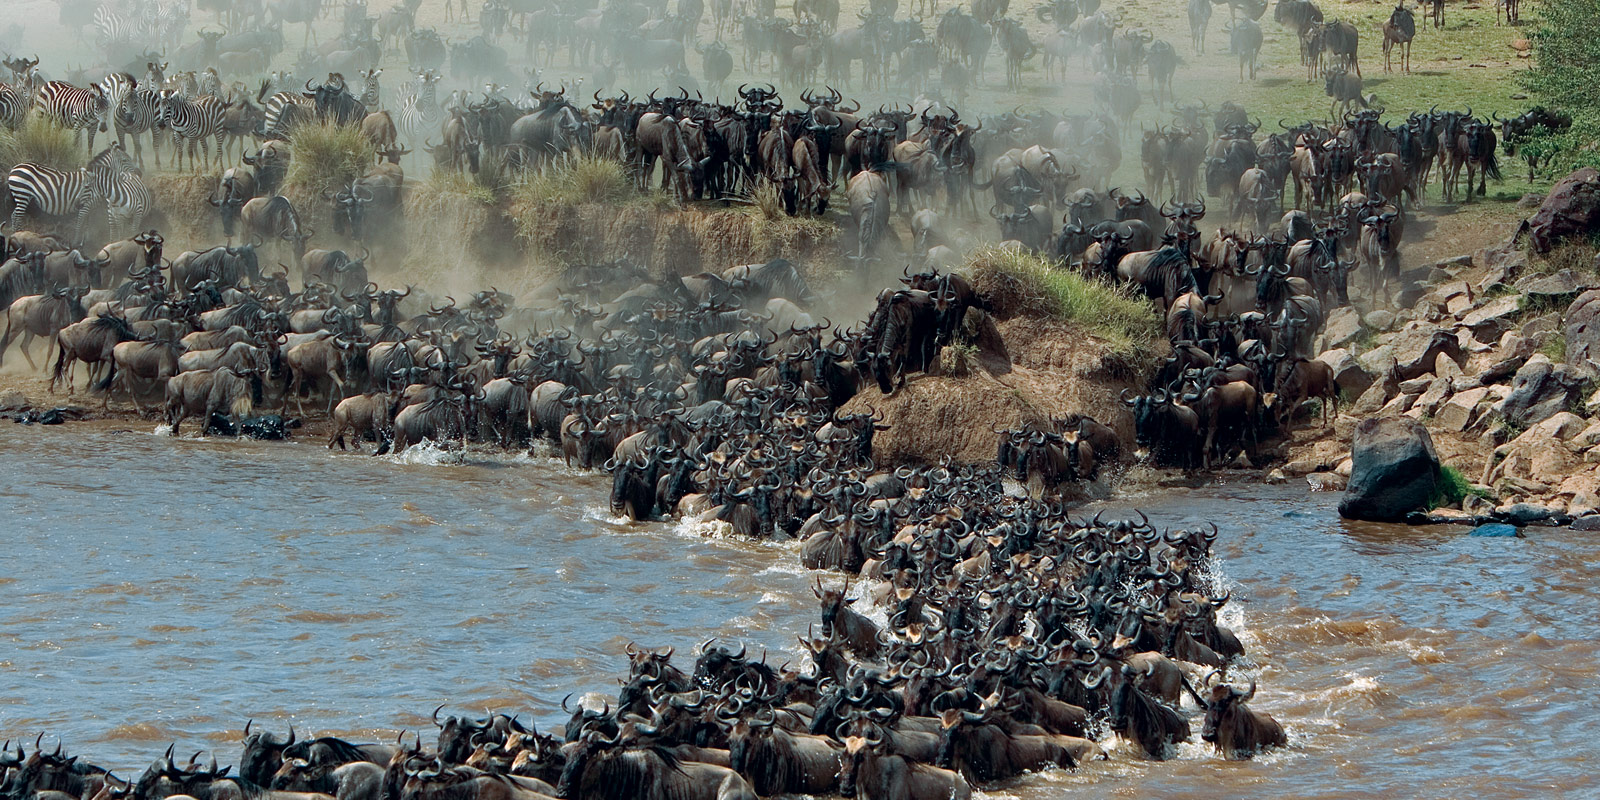 Best time to book safari in Kenya